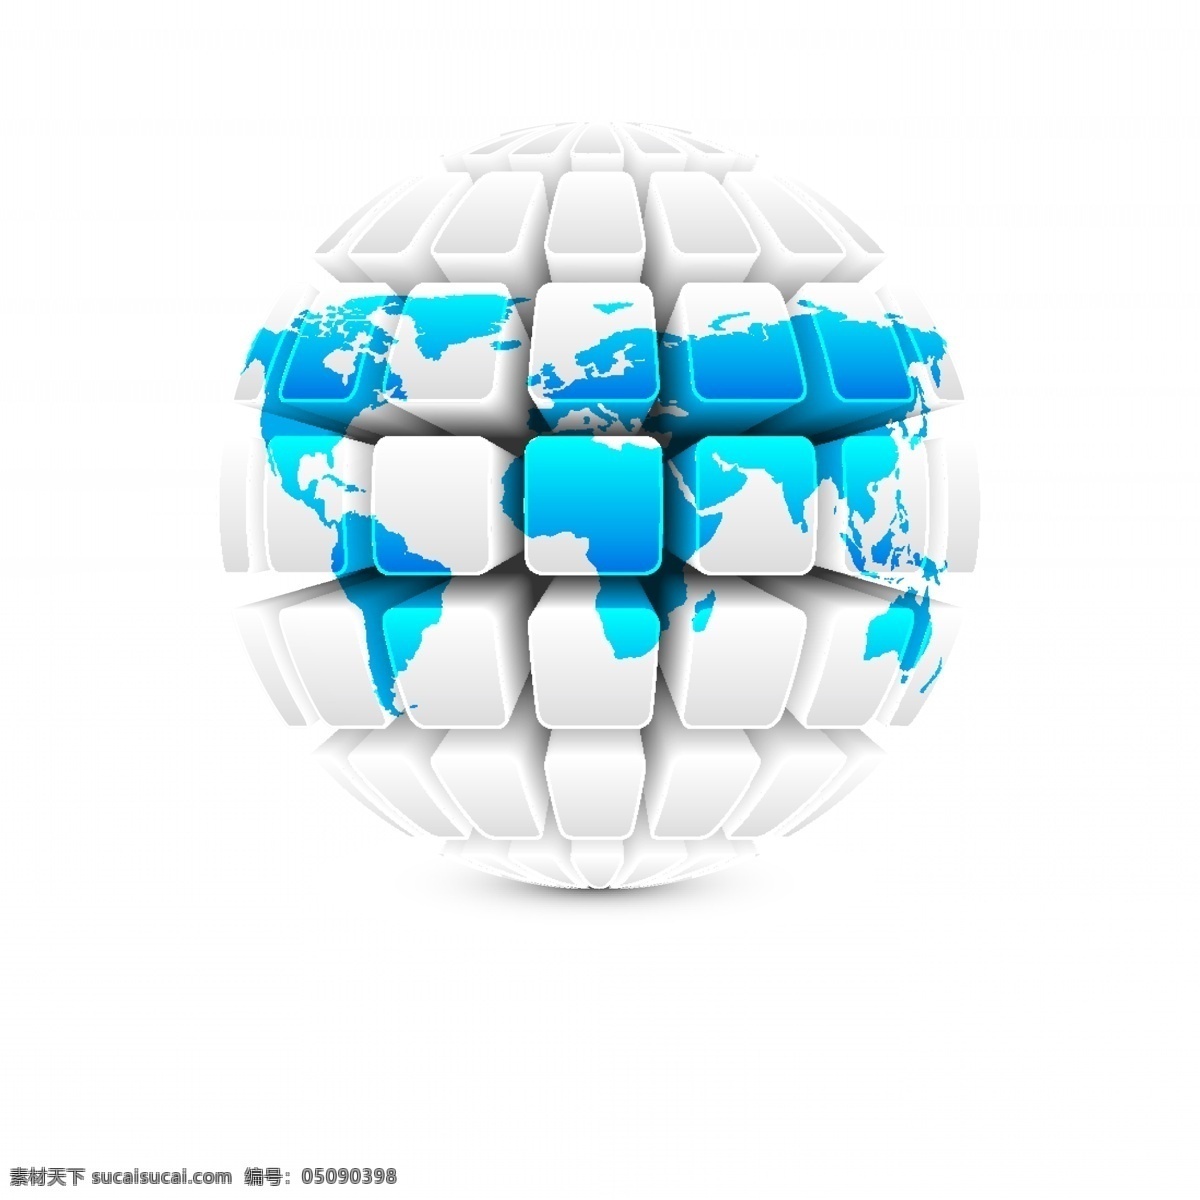 创意3d地球 立体 地球 矢量 环球 世界 科技 质感 地球仪 五大洲 亚洲 欧洲 非洲 美洲 大洋州 图标 标志 标签 logo 小图标 标识标志图标